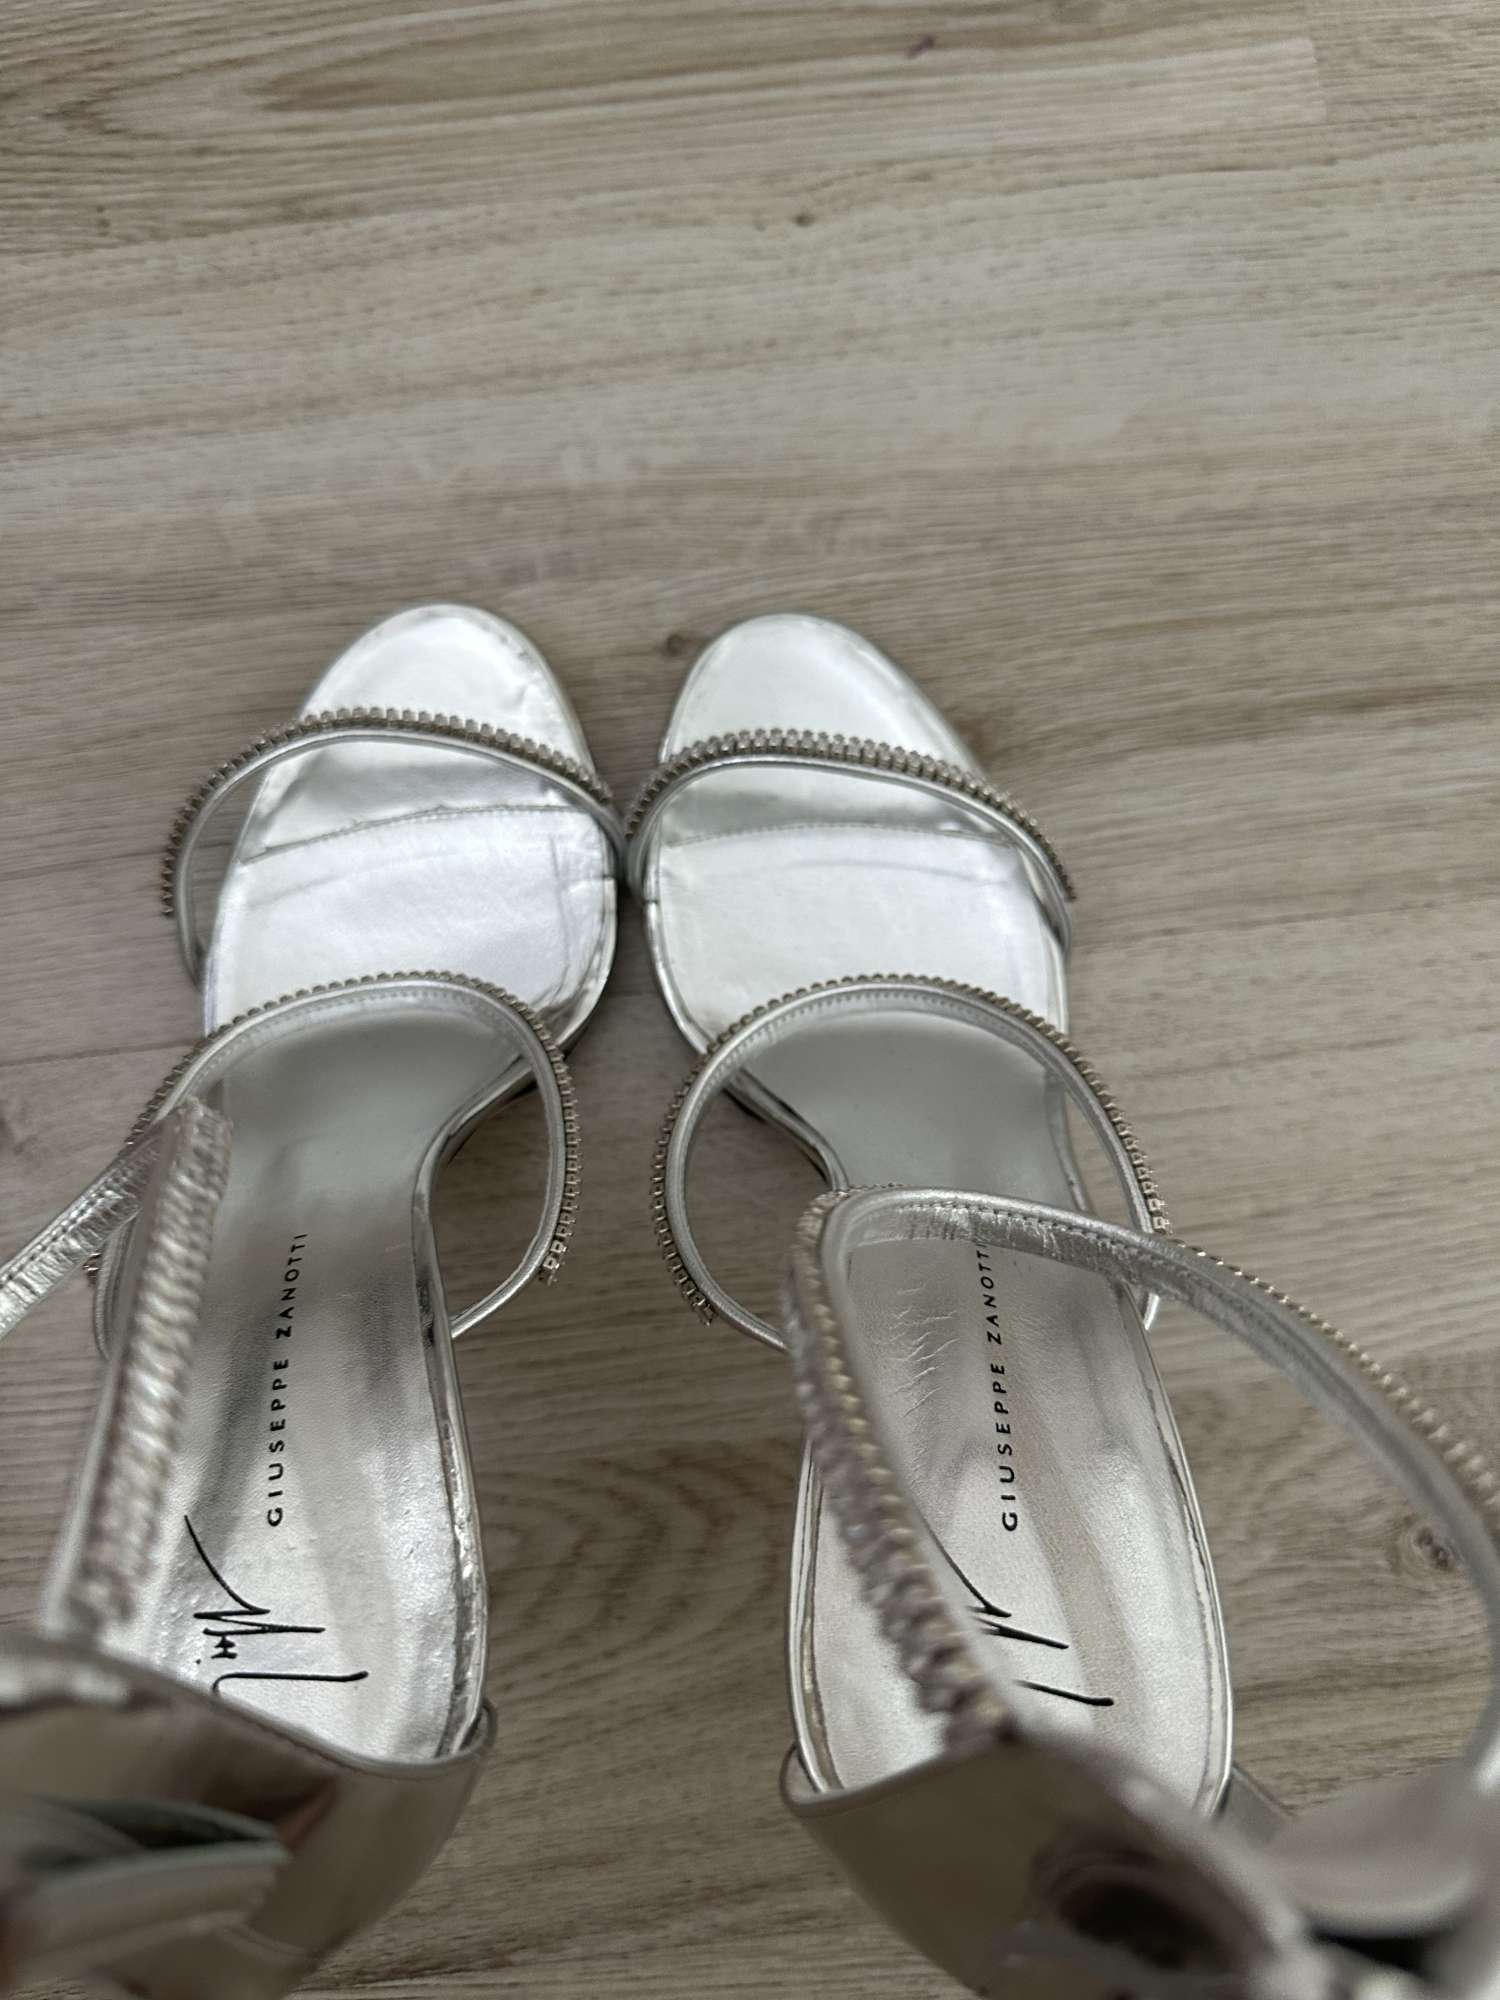 Giuseppe Zanotti Harmony embellished stiletto sandals